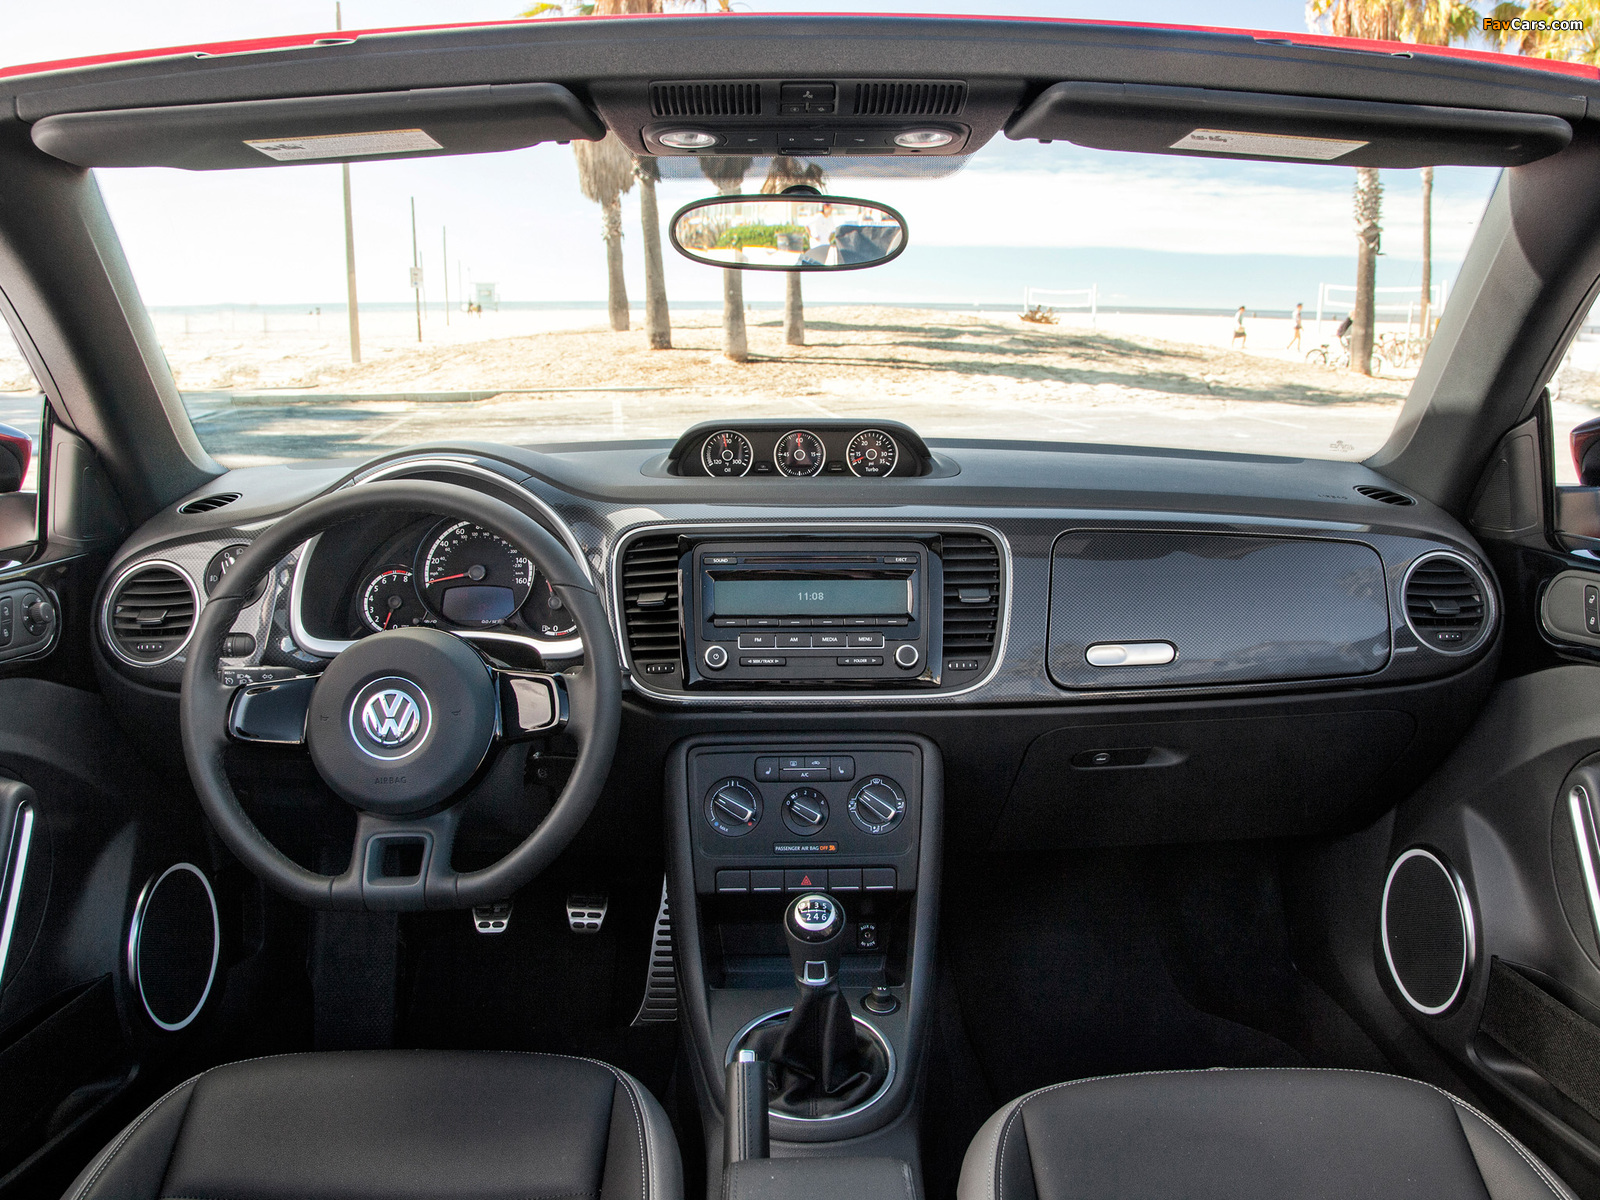 Volkswagen Beetle Convertible Turbo 2012 images (1600 x 1200)